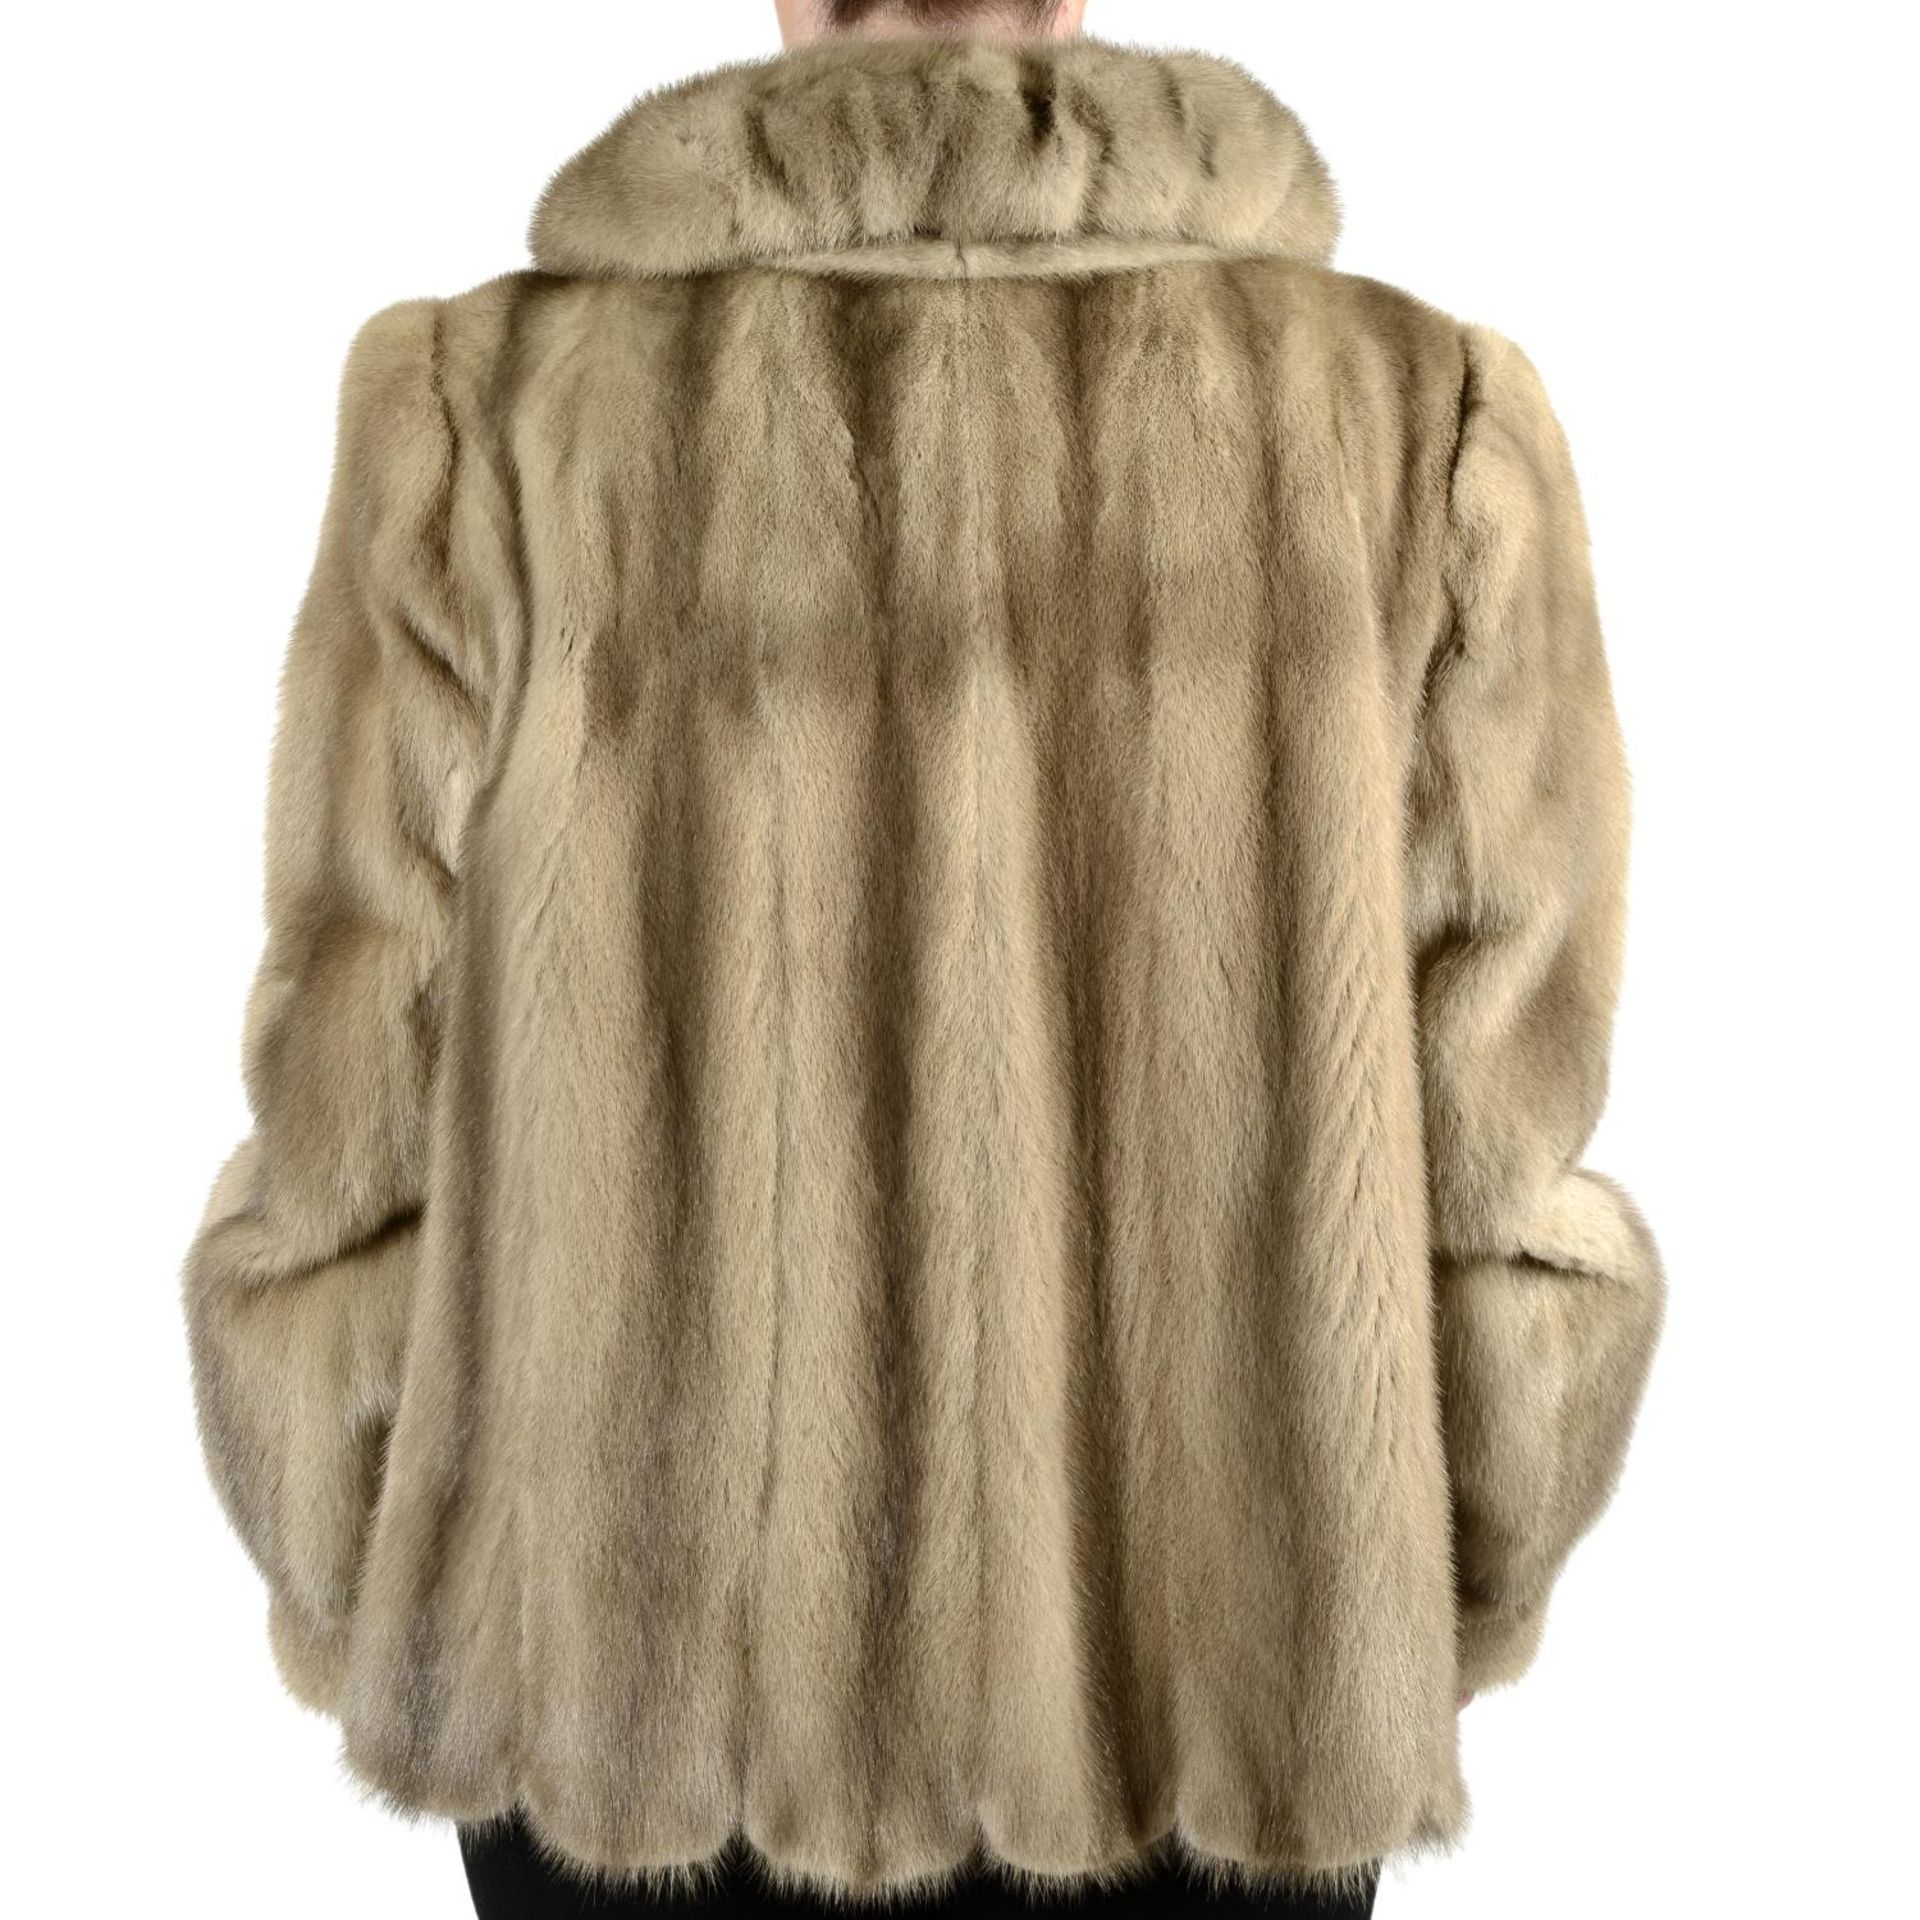 A lavender beige mink jacket. - Image 2 of 3